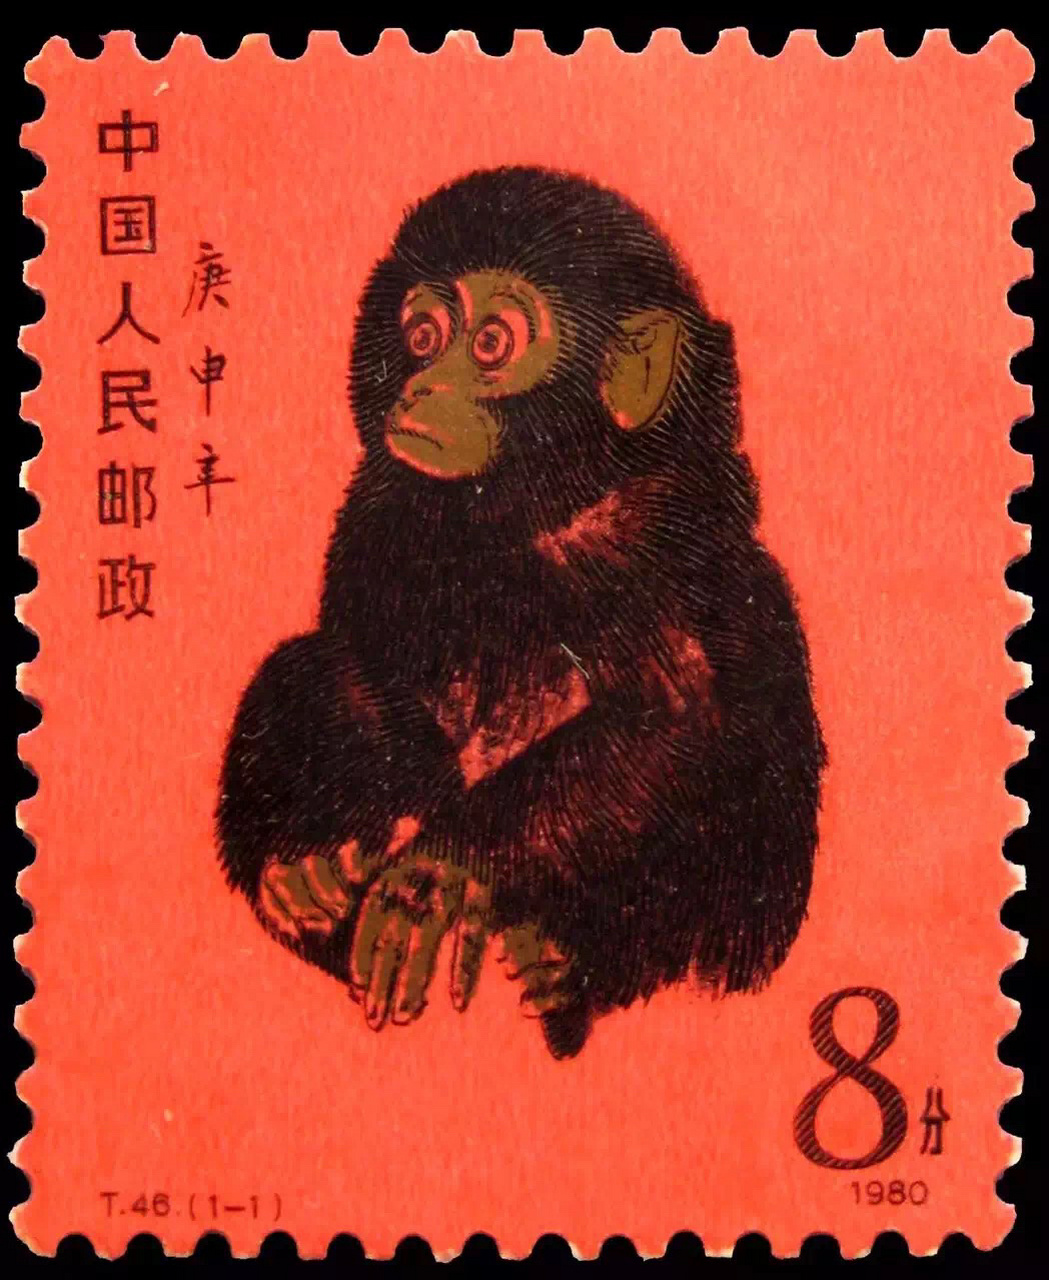 第一张猴年邮票图片